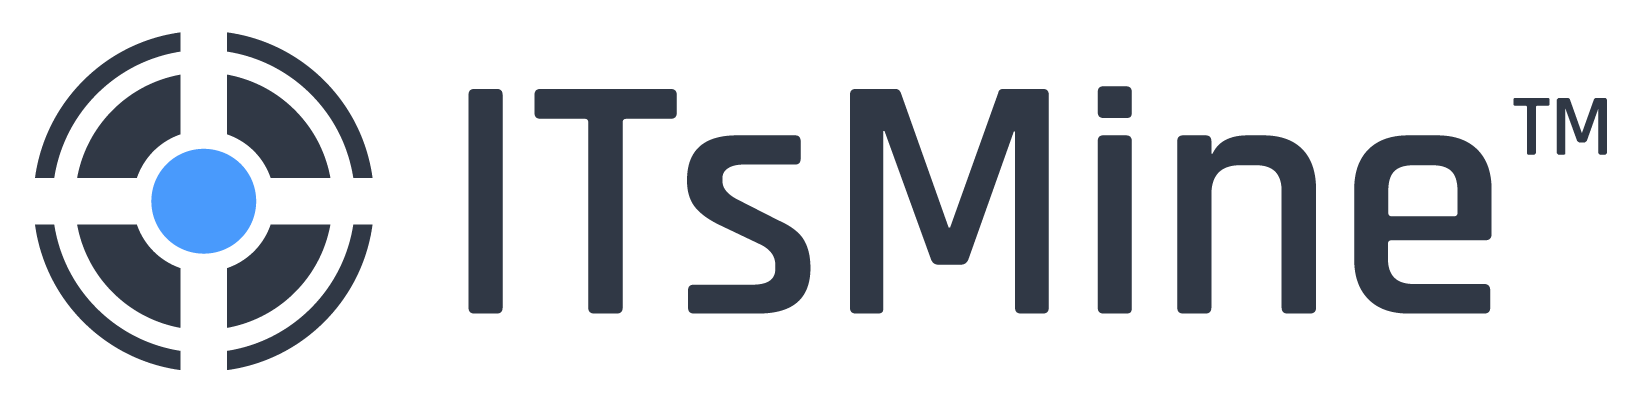 ITsMine logo